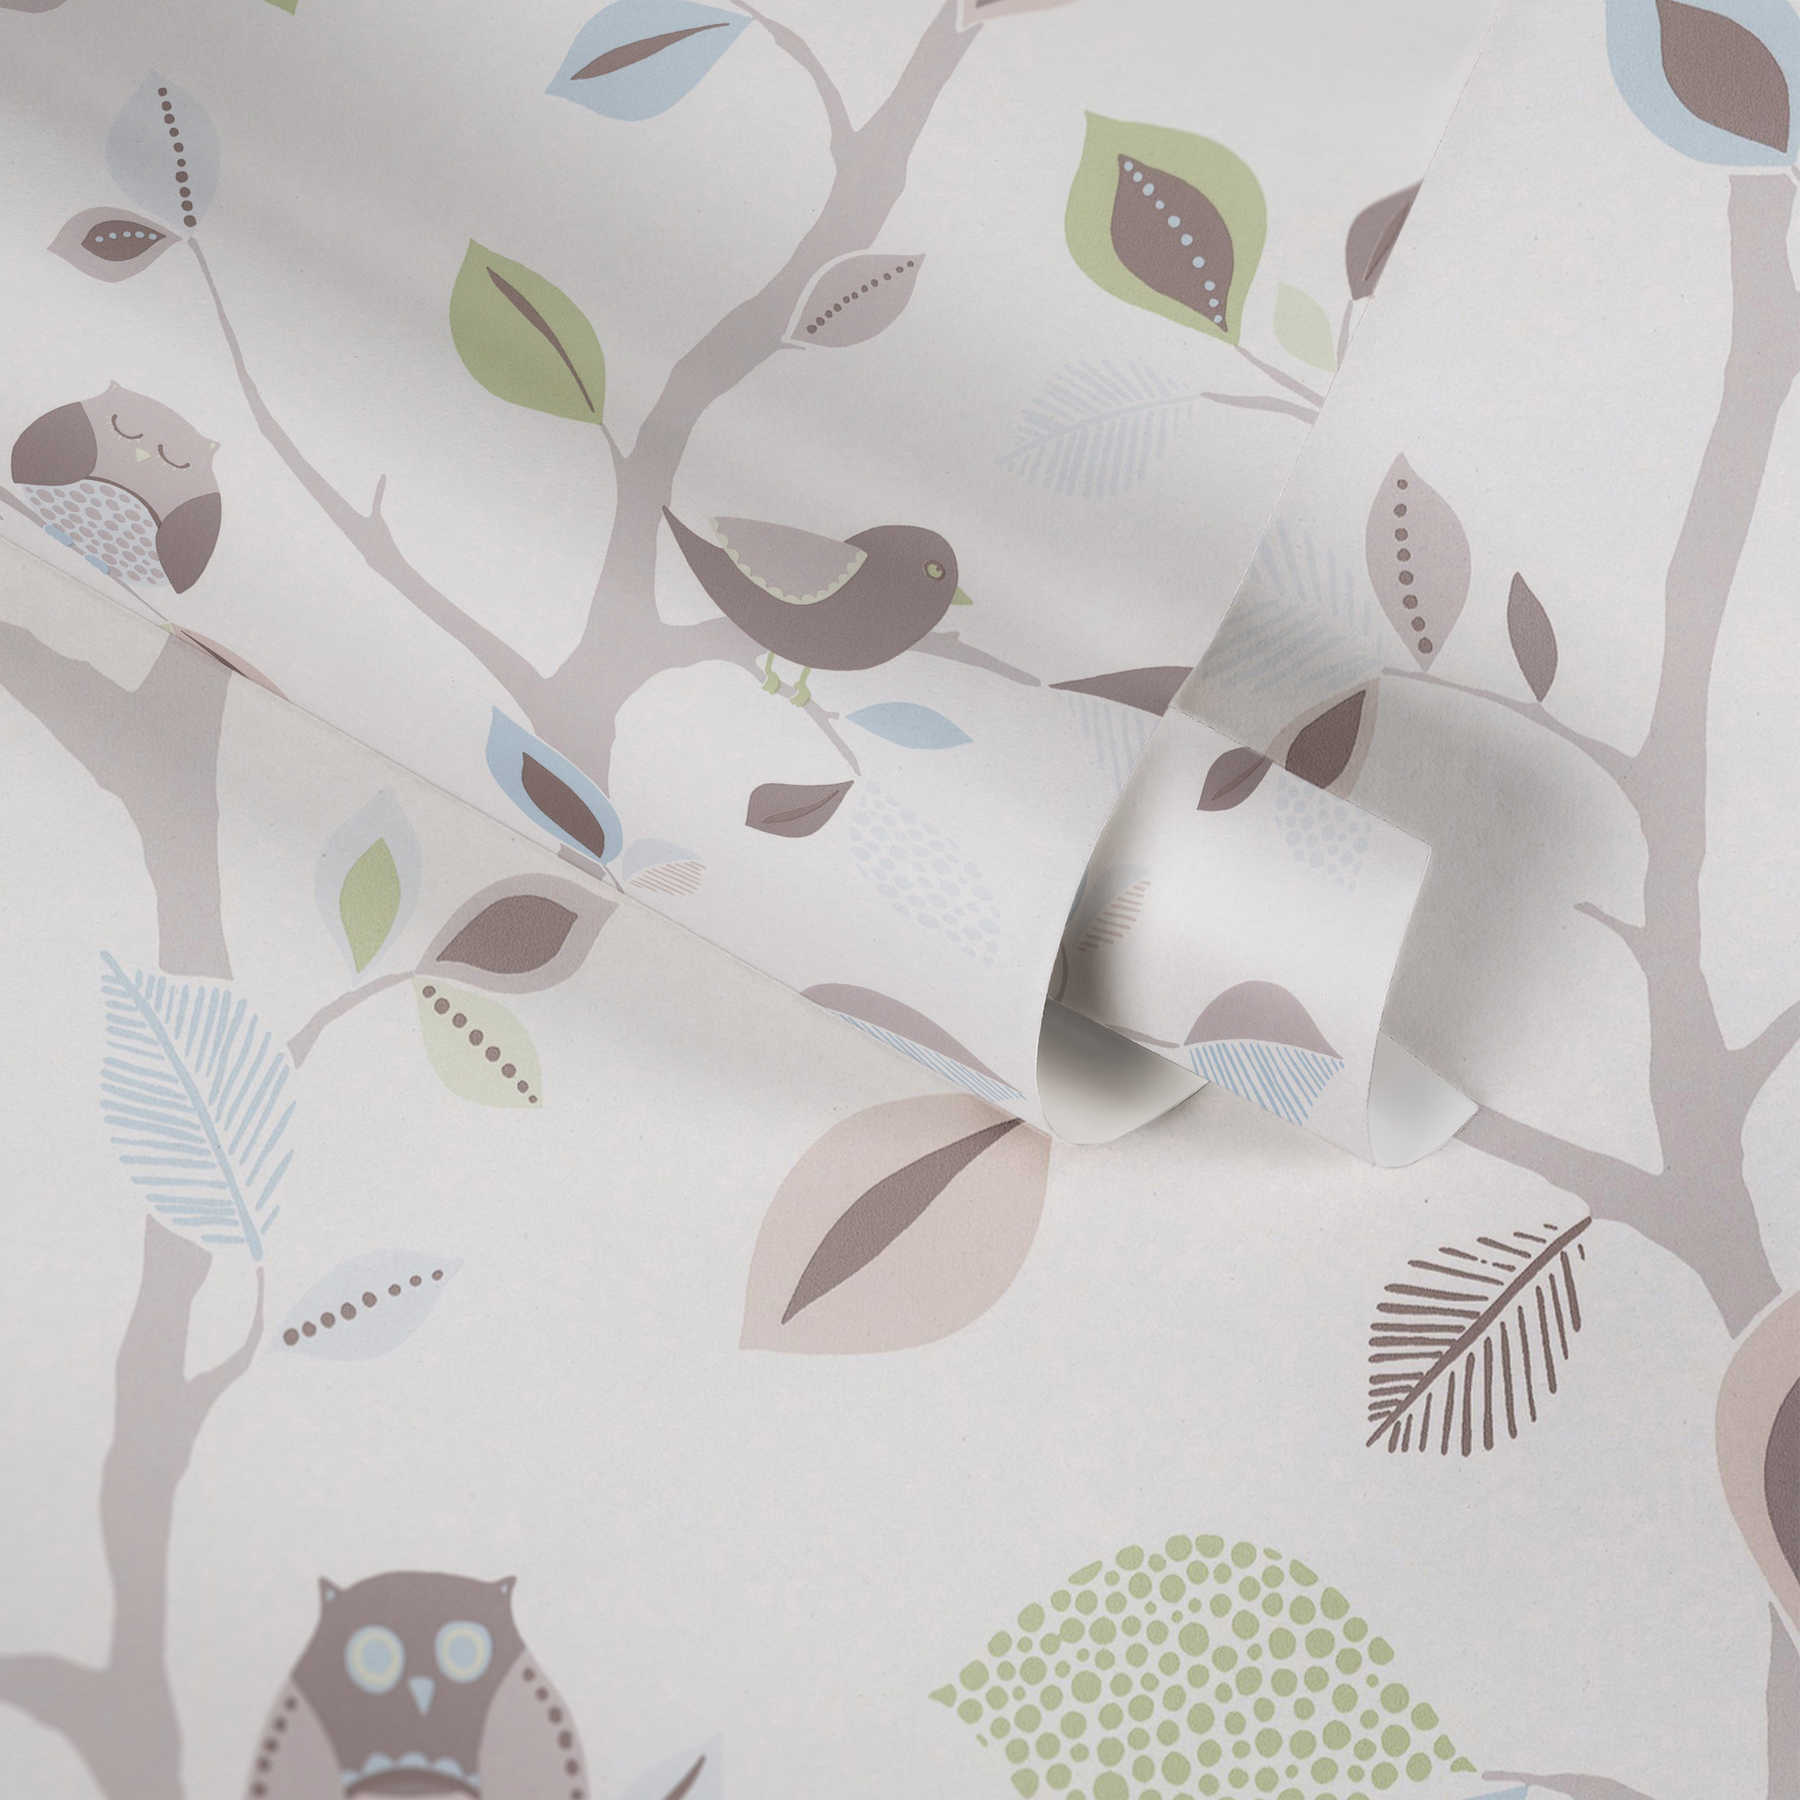             Kinderzimmertapete Papier mit Wald und Eulen – Bunt, Grün
        